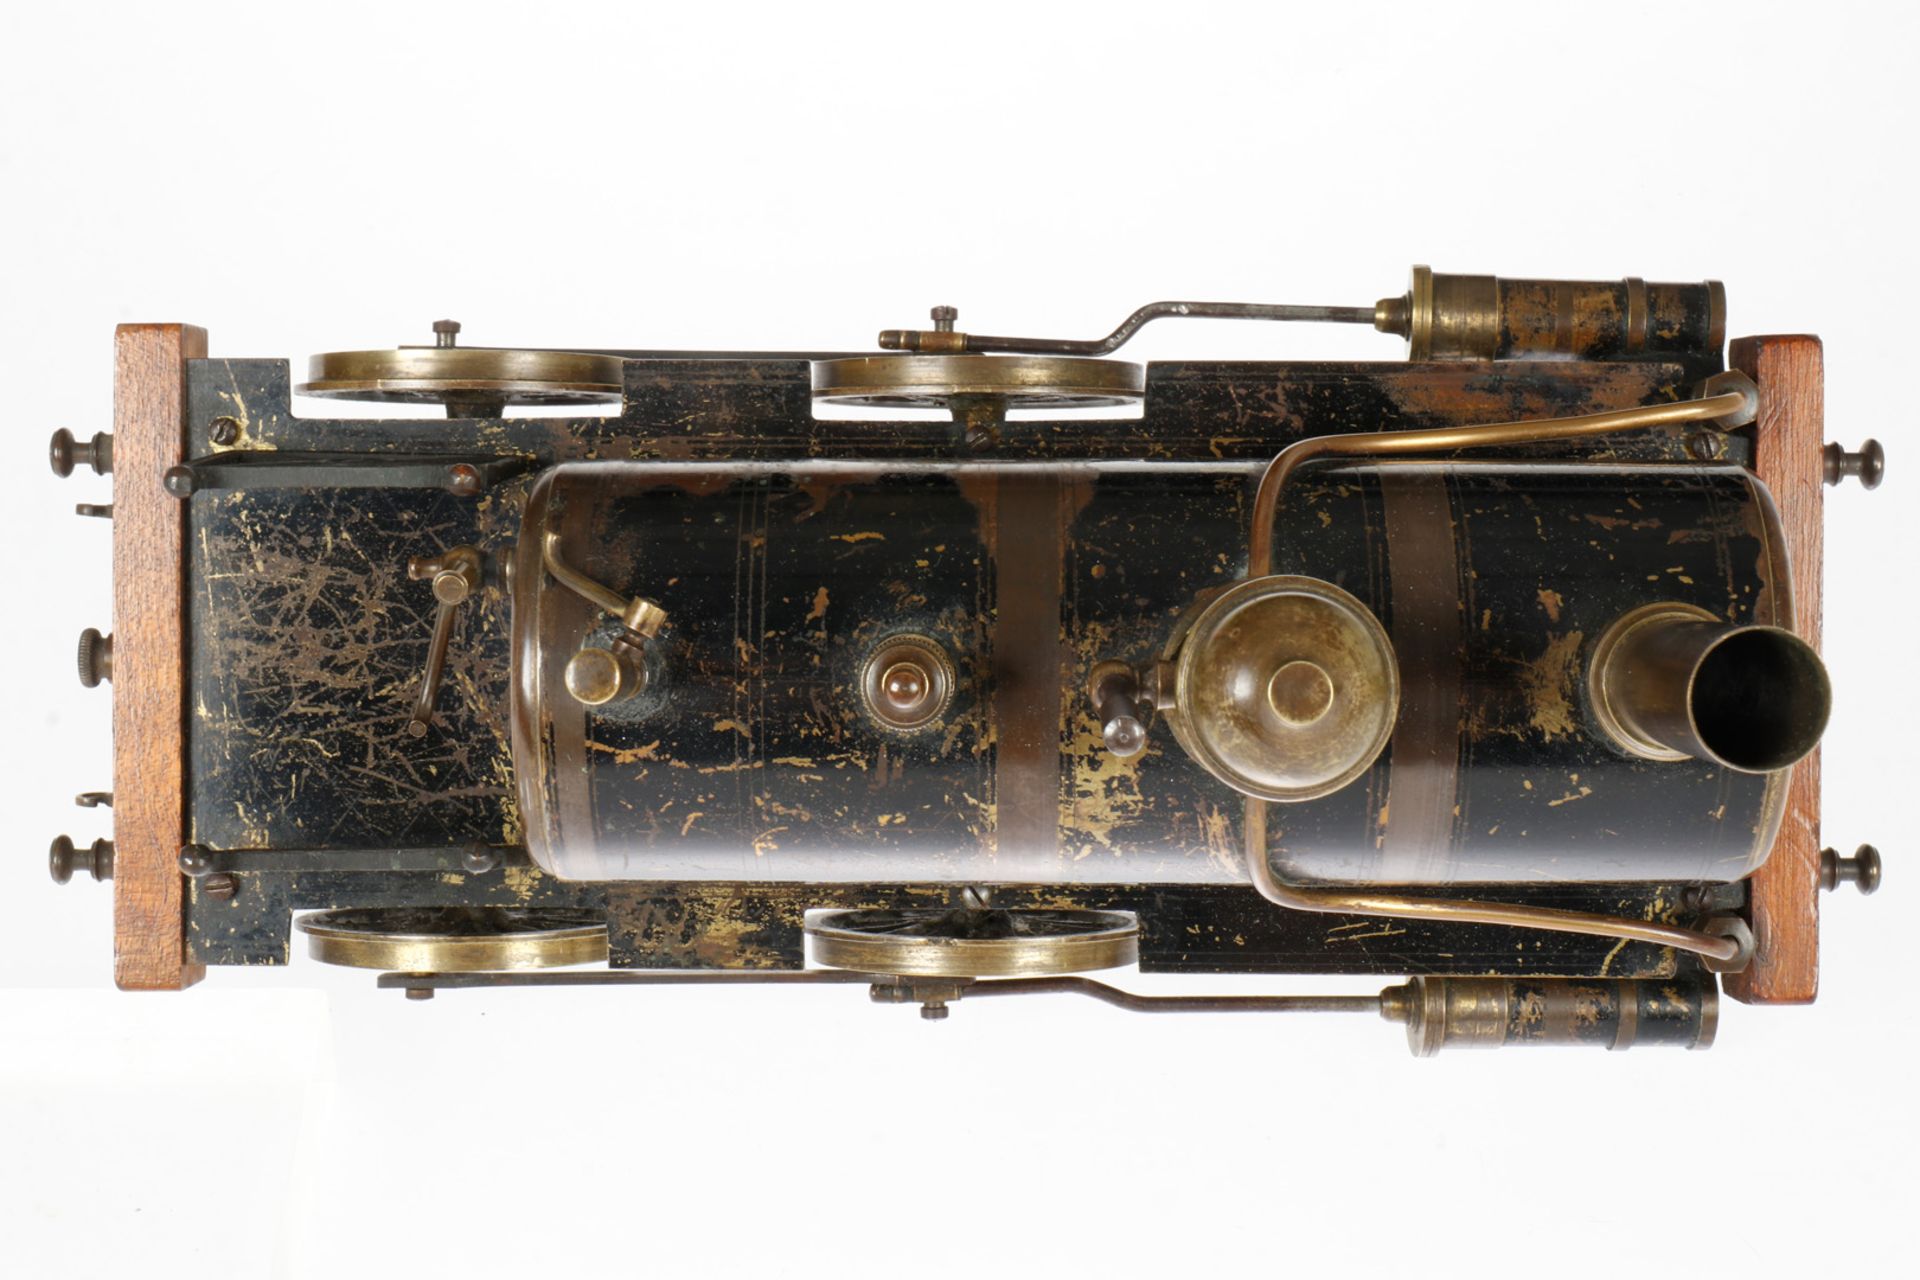 Radiguet 1-B Dampflok, uralt, spiritusbetrieben, Spurweite 85, 2 feststehende Zylinder, mit - Image 5 of 5